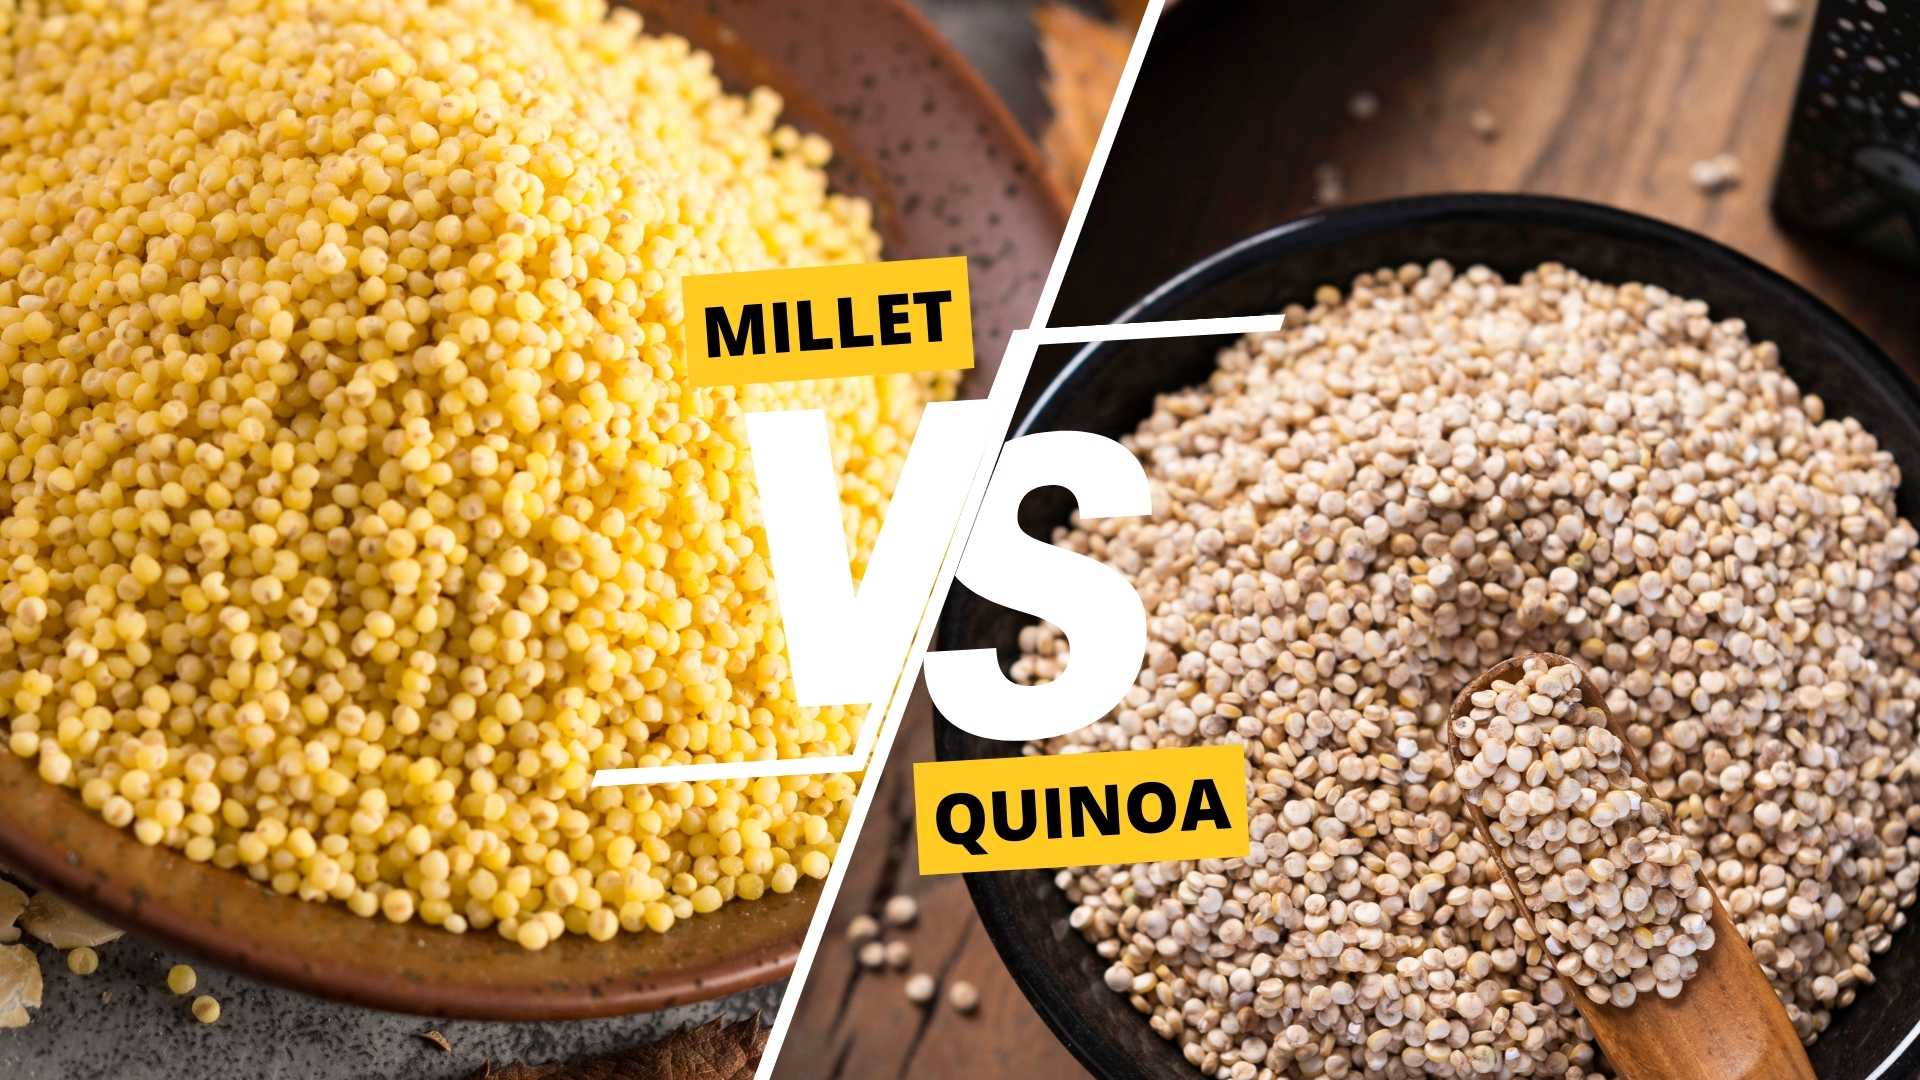 Millet vs Quinoa